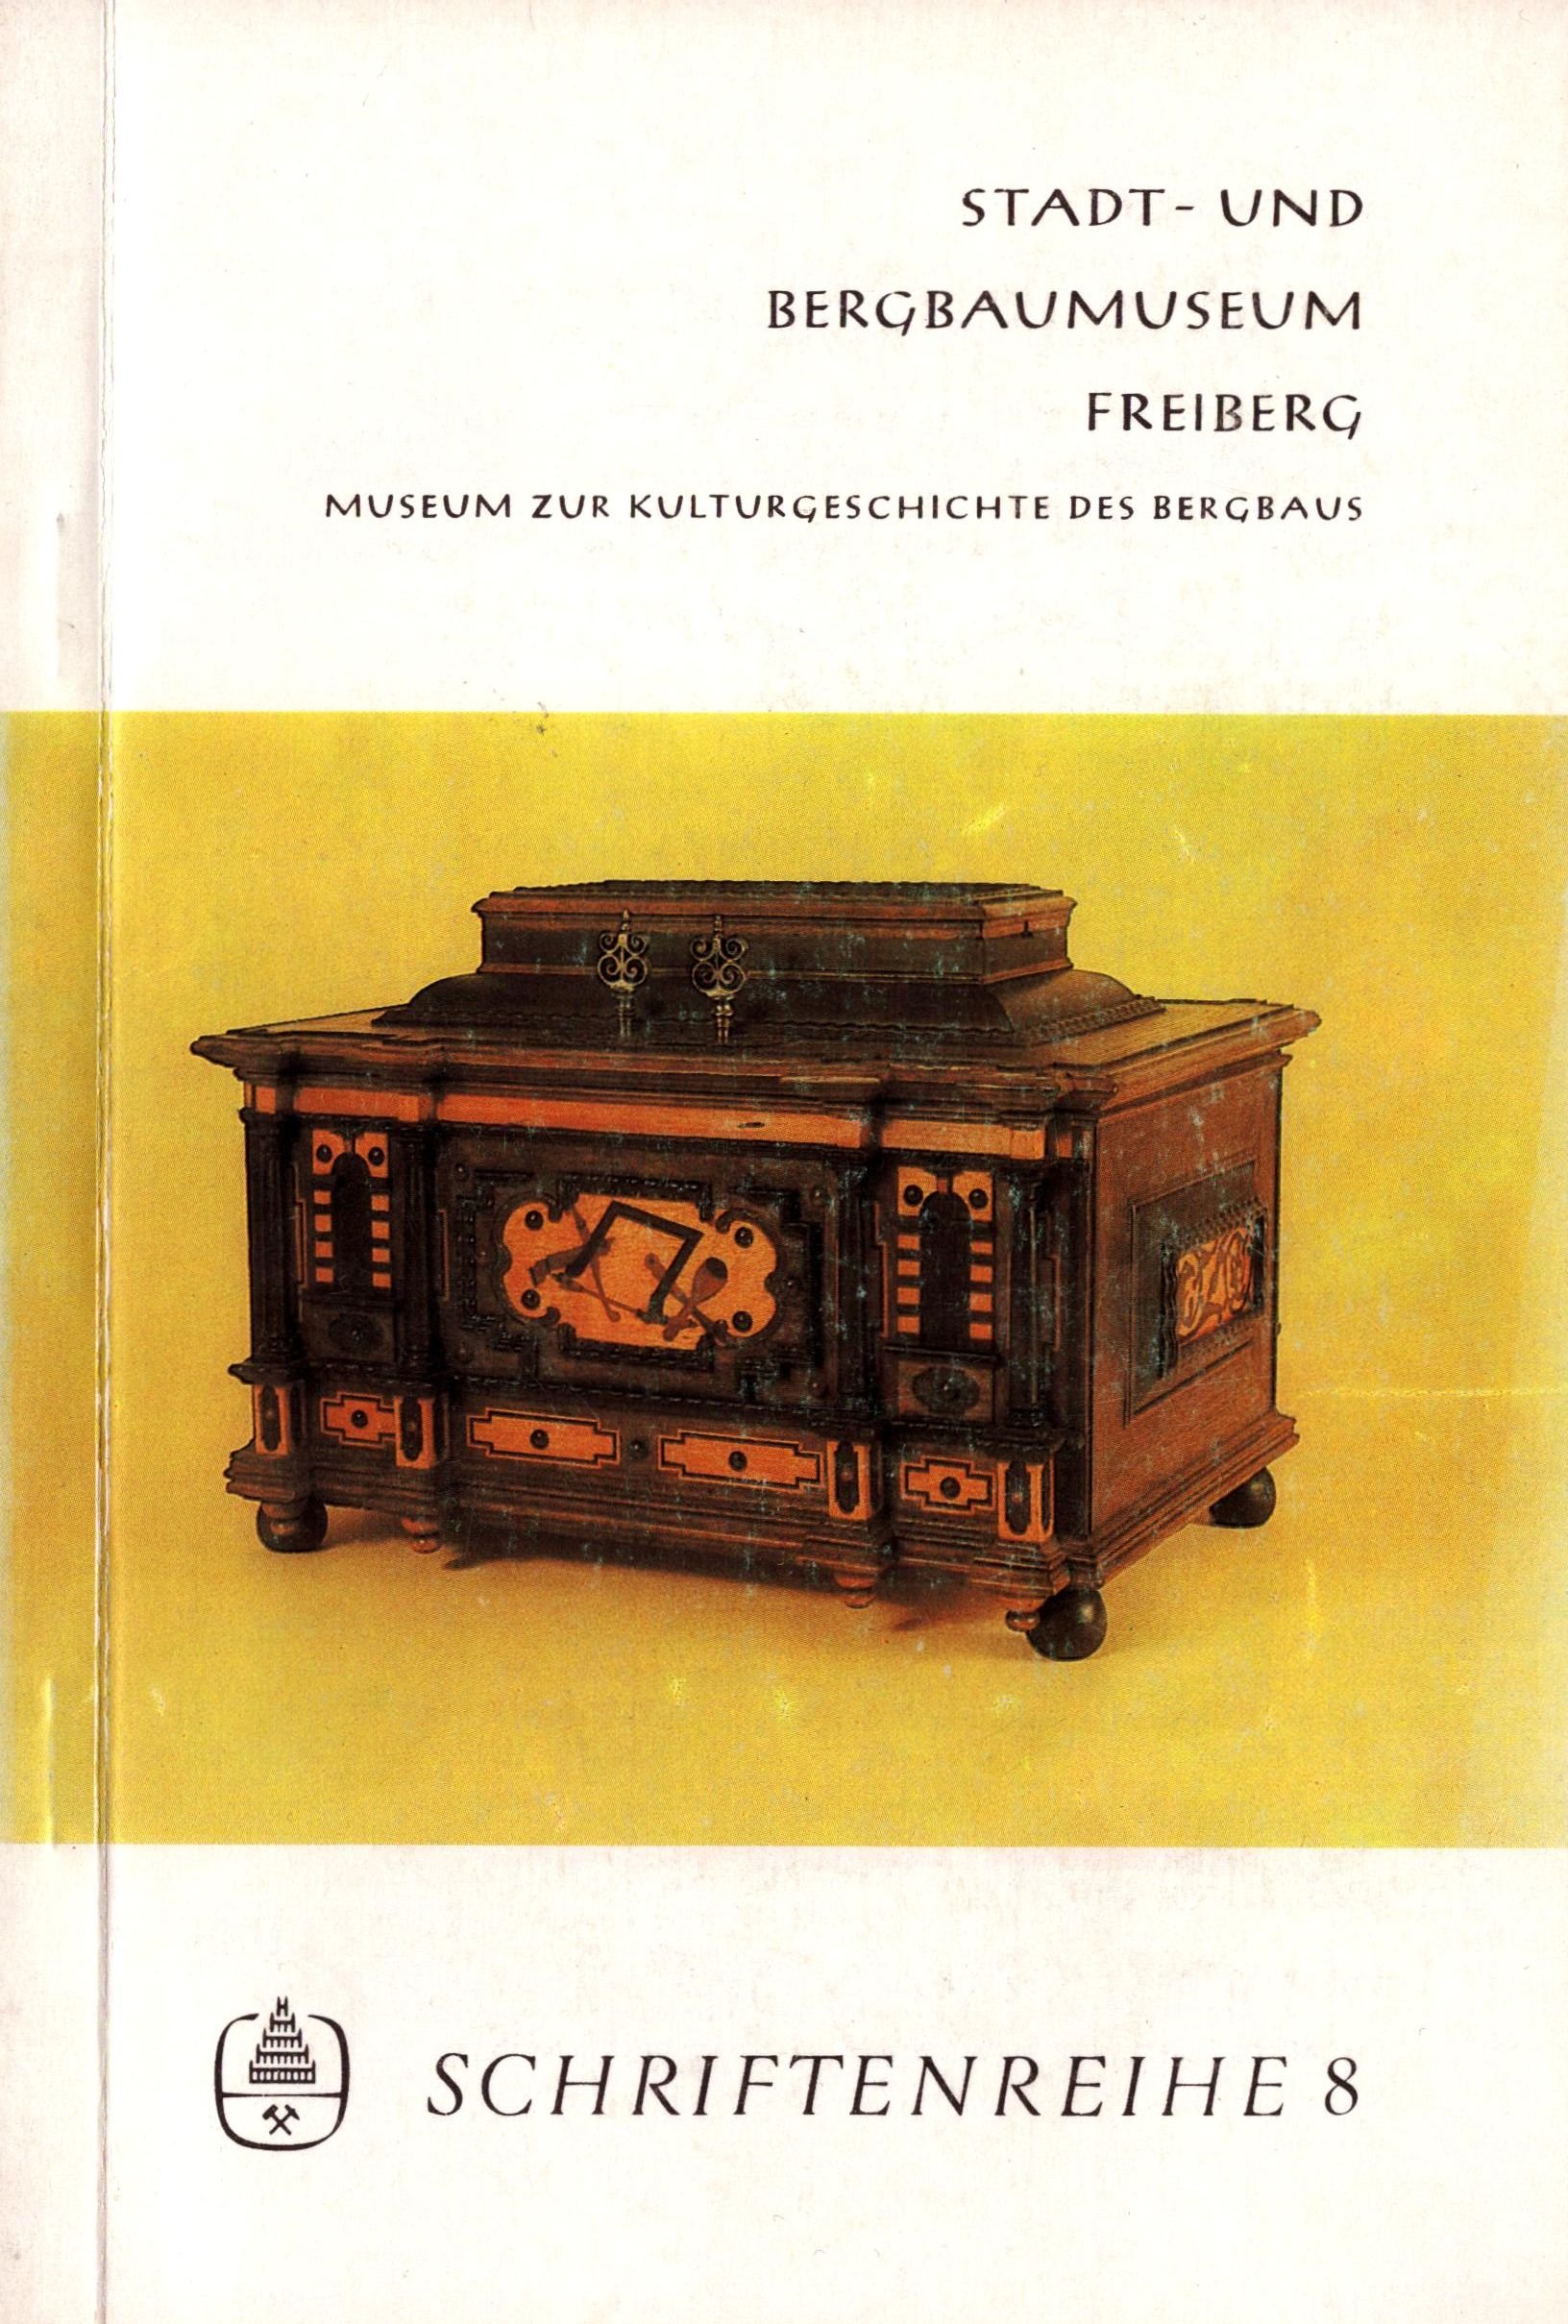 Stadt- und Bergbaumuseum Freiberg - Schriftenreihe 8 (Archiv SAXONIA-FREIBERG-STIFTUNG CC BY-NC-SA)